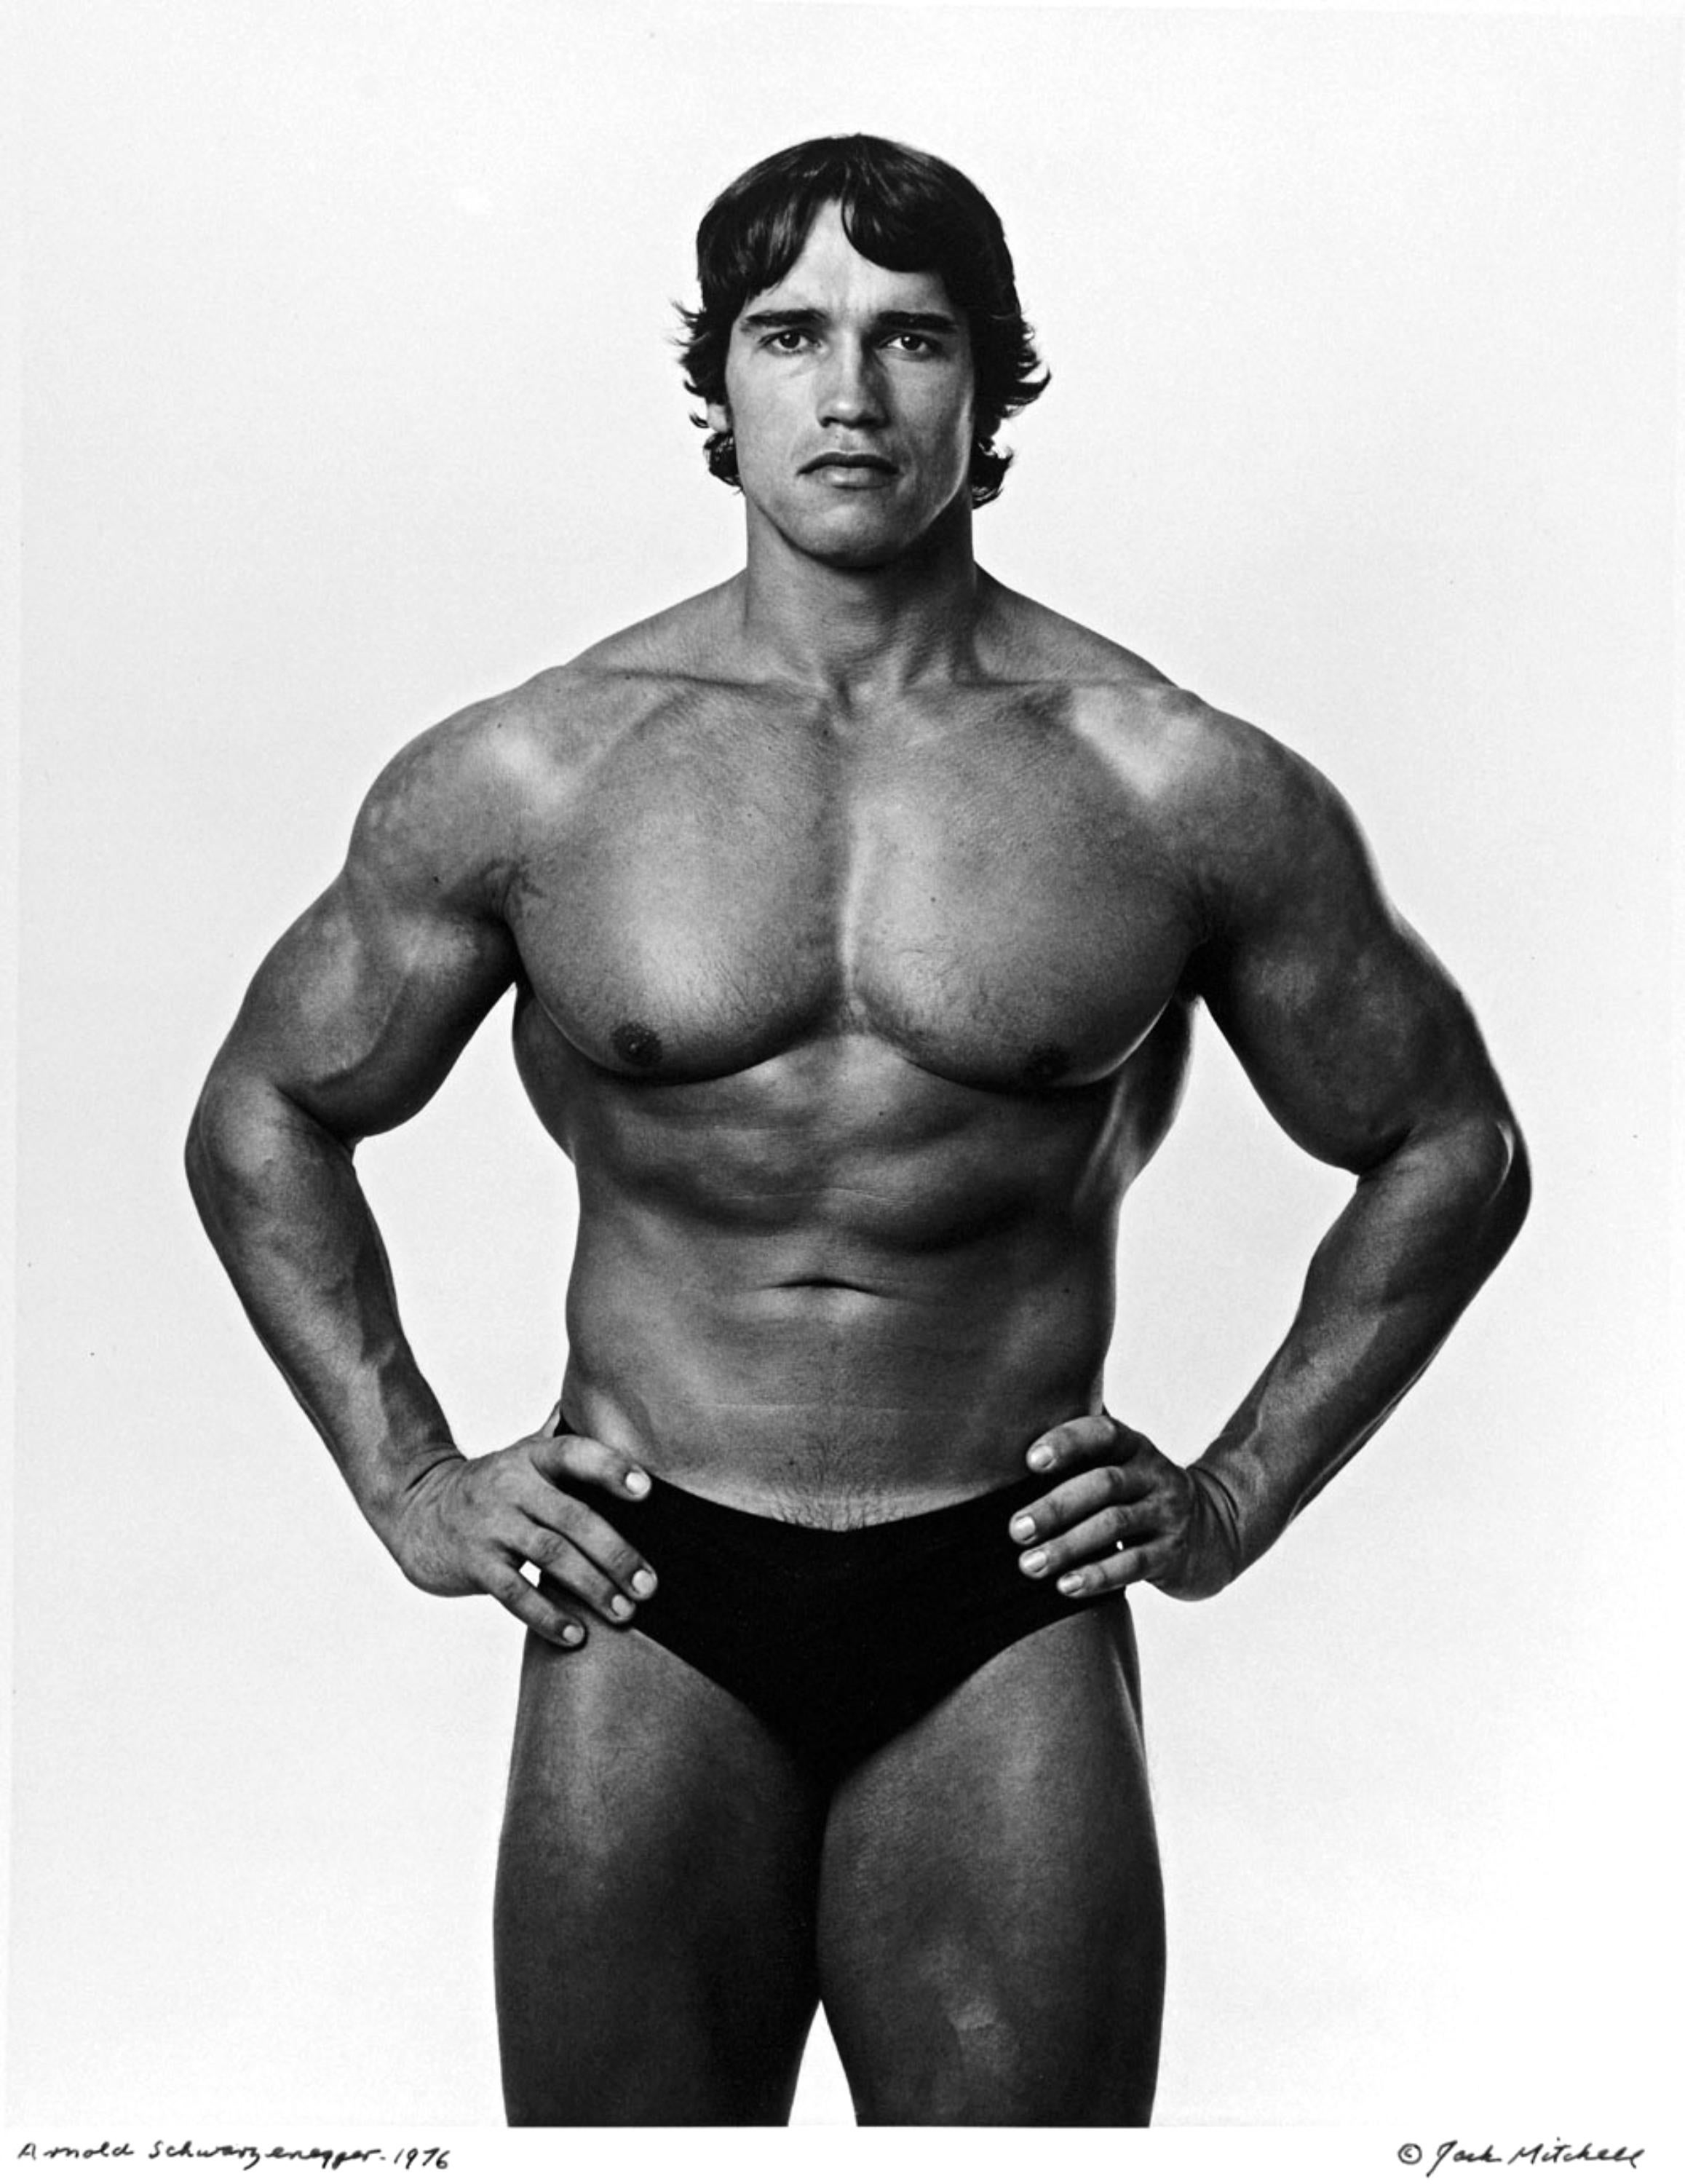 Arnold Schwarzenegger - Portrait encadré, photo signée vintage - Photograph de Jack Mitchell